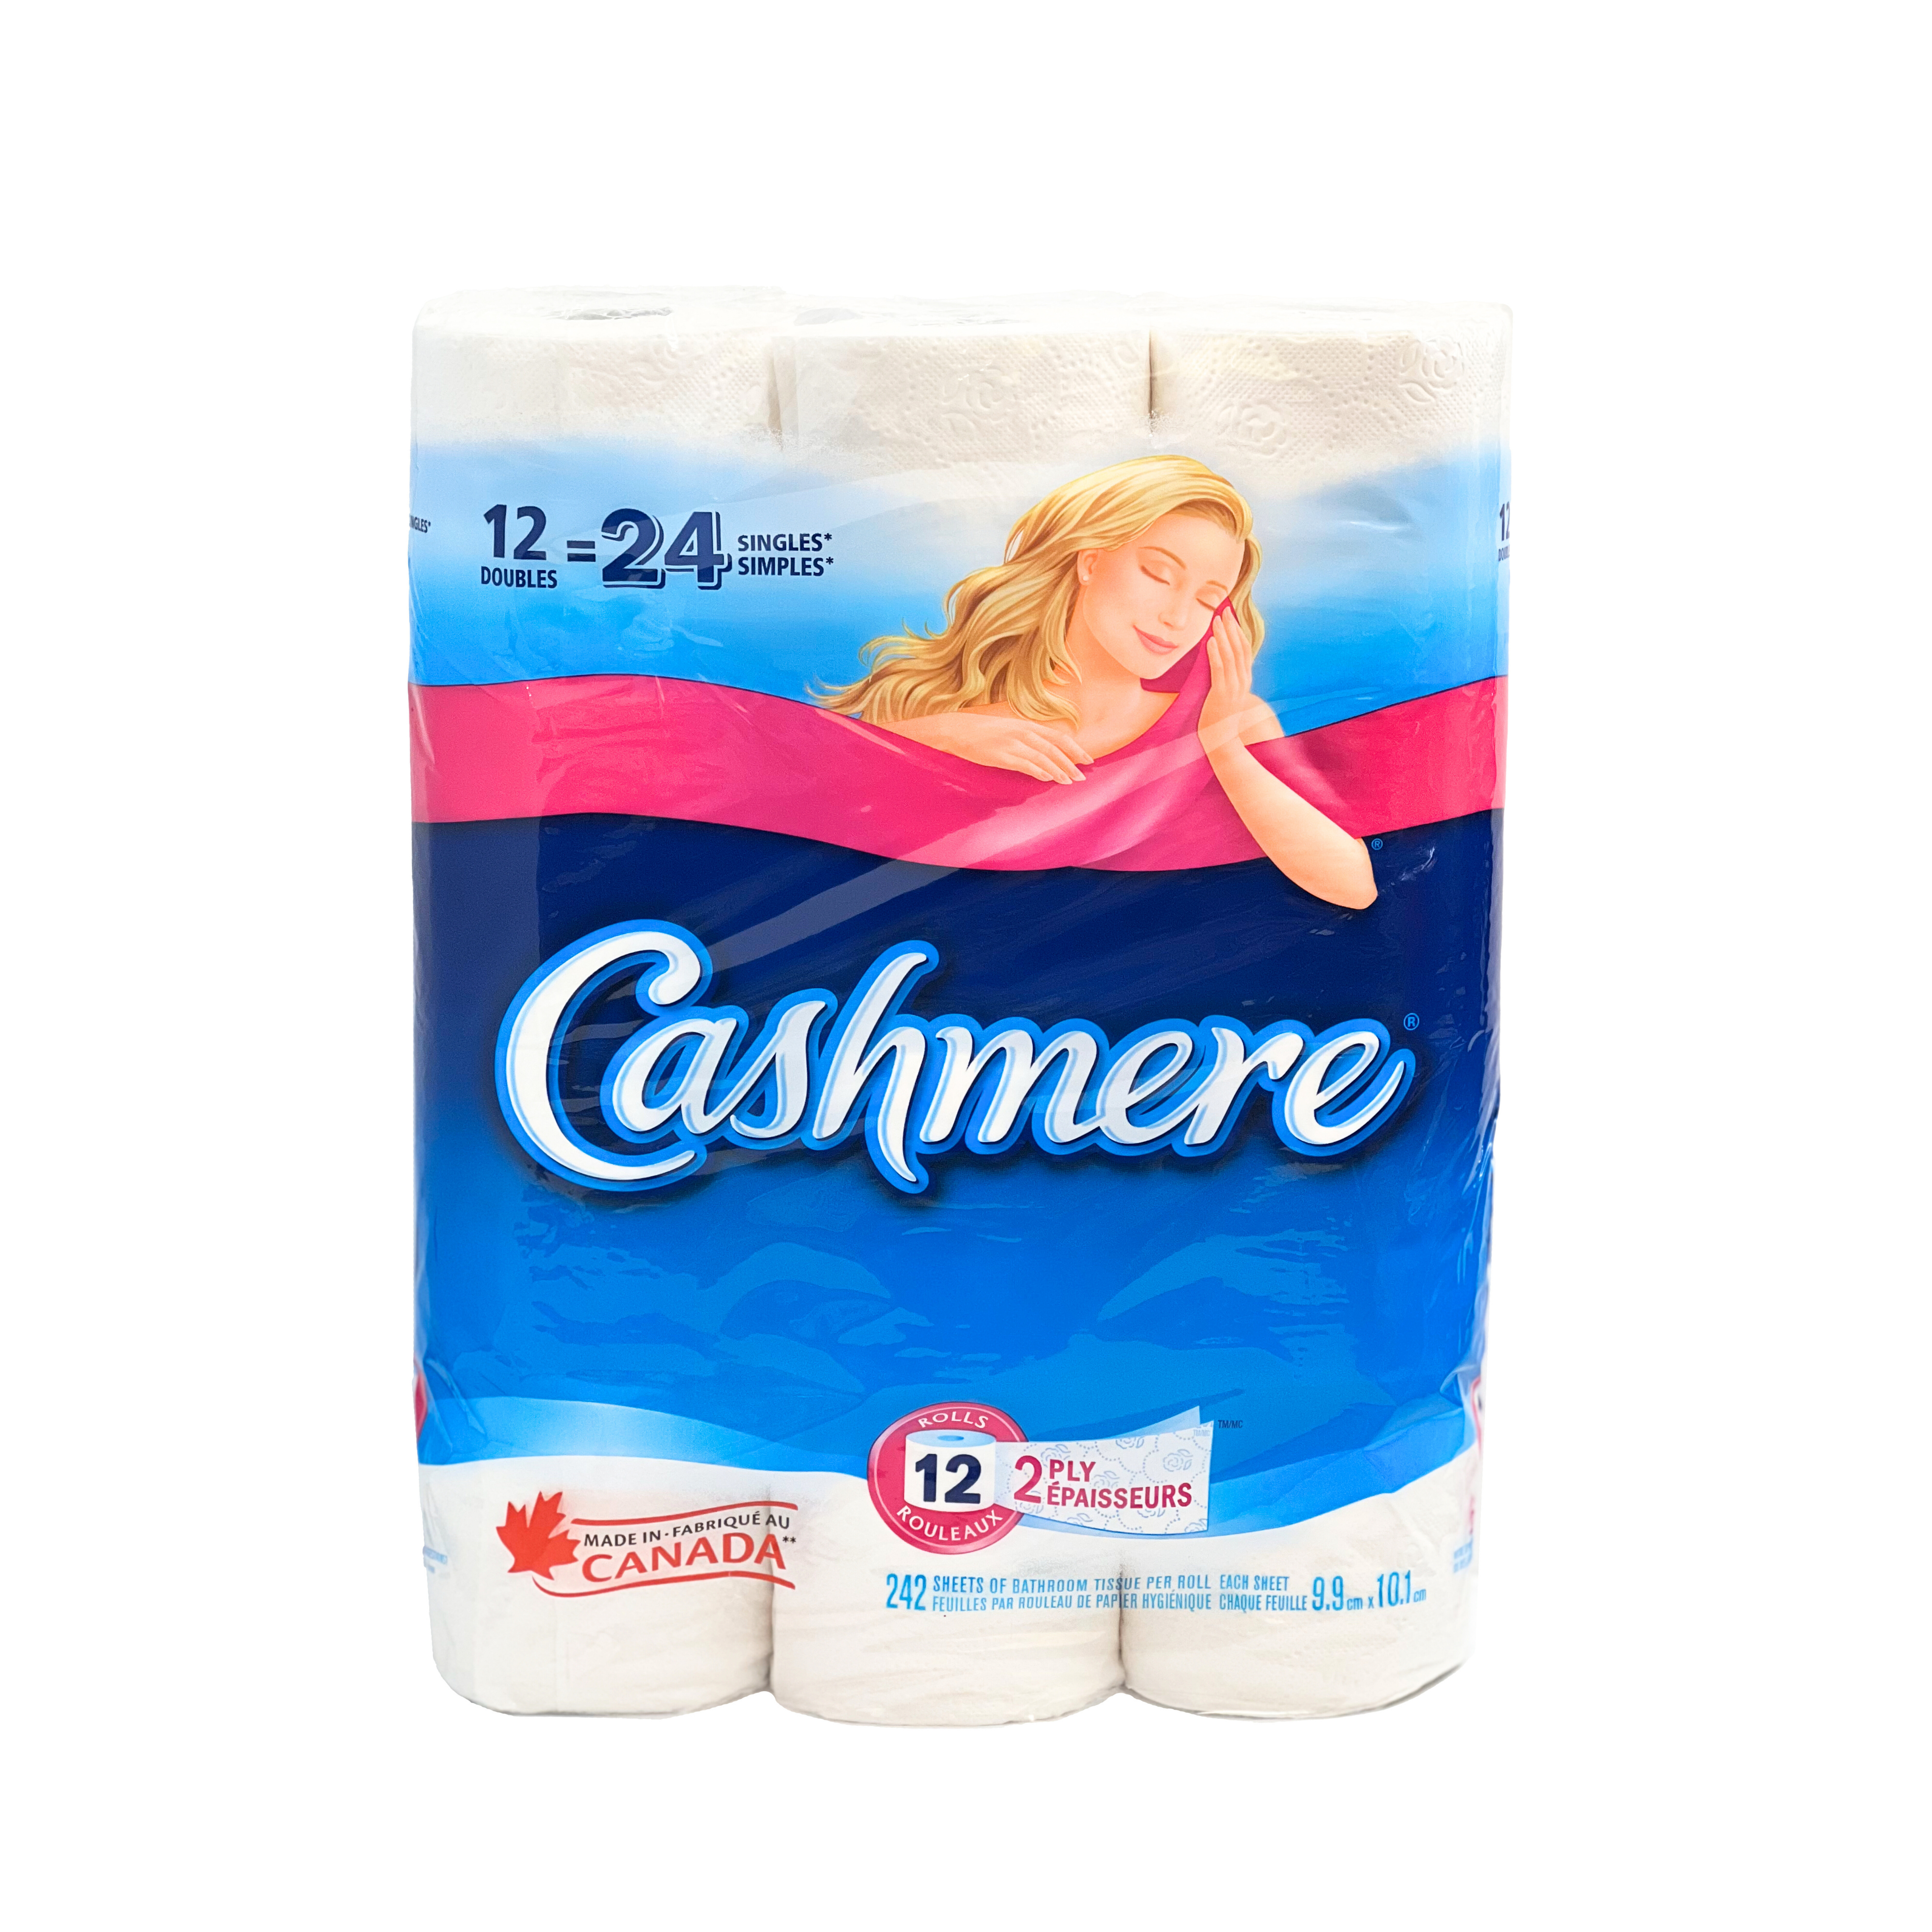 Cashmere Bathroom Tissue 12 Rolls